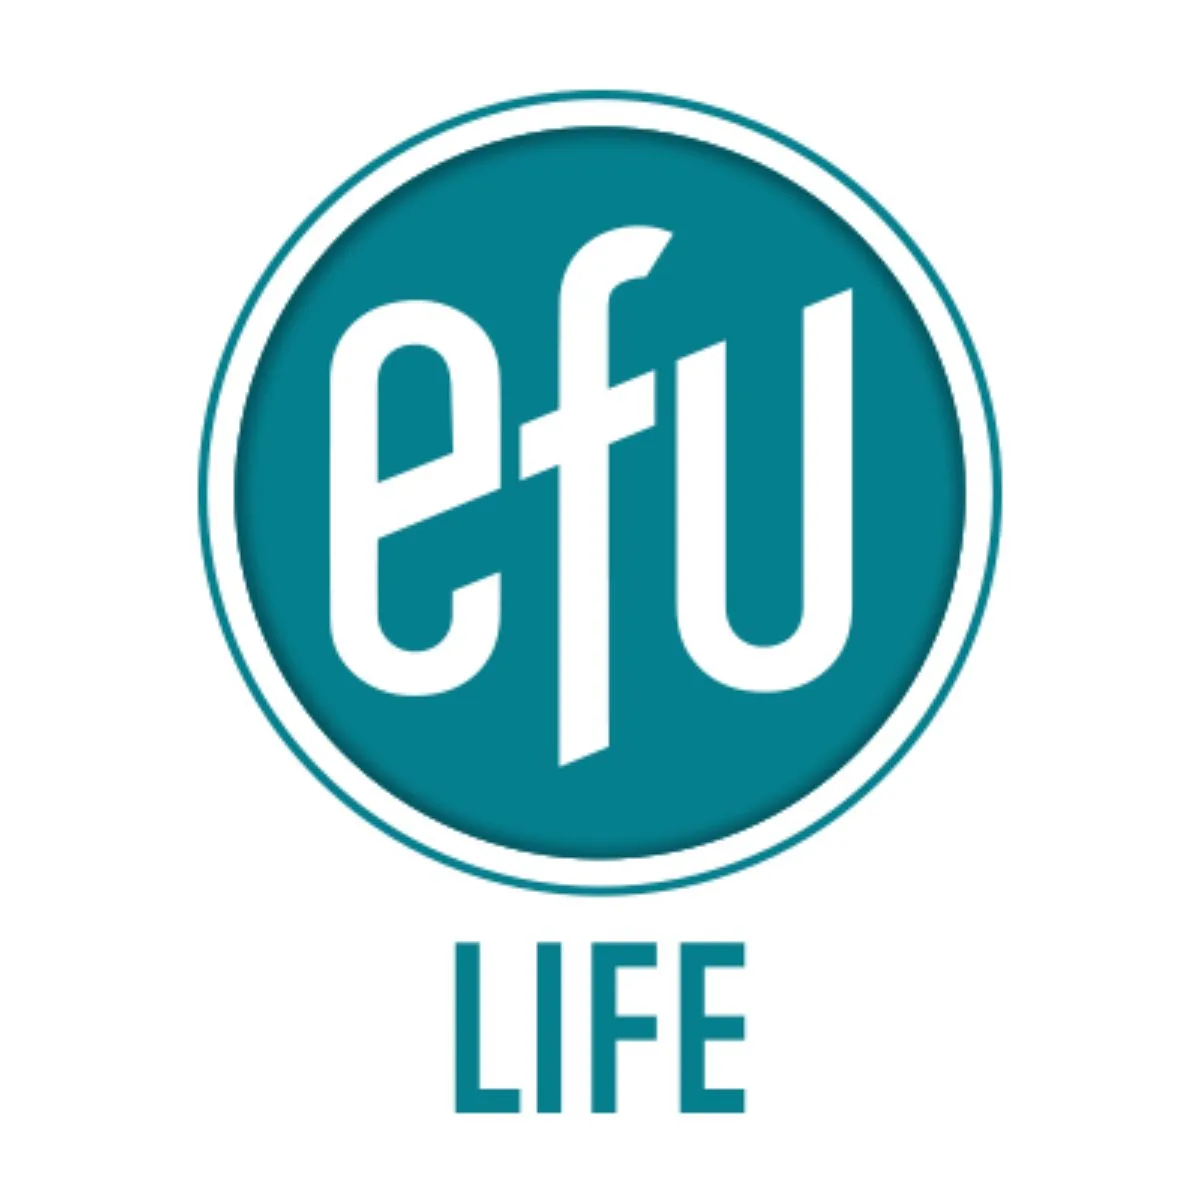 EFU Life Assurance